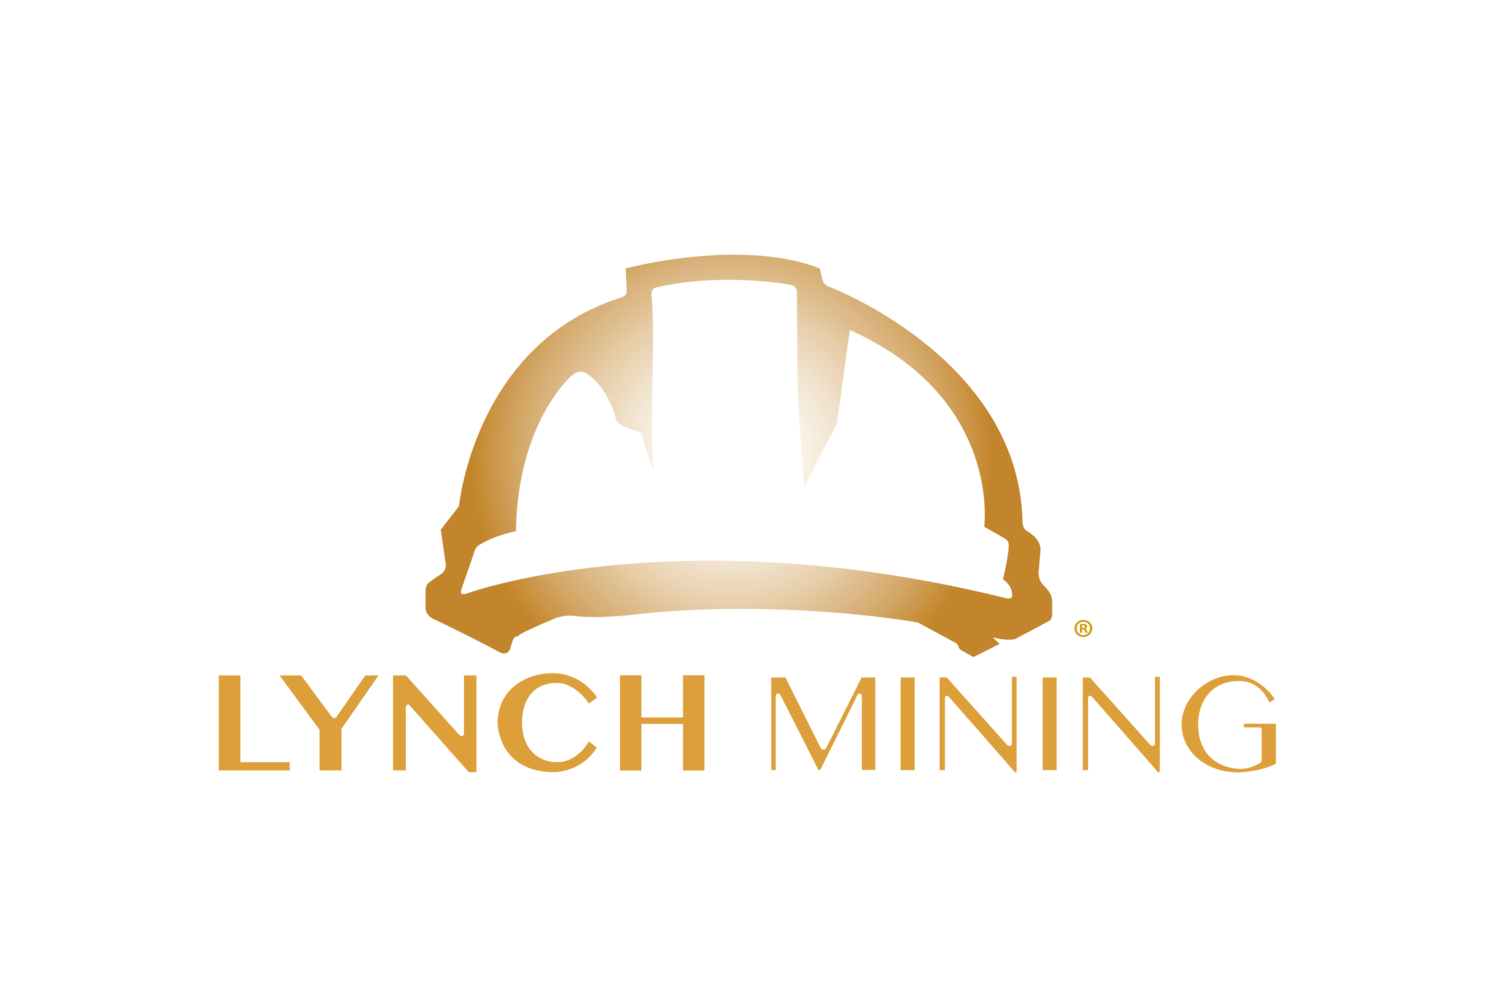 Lynch Mining, LLC®